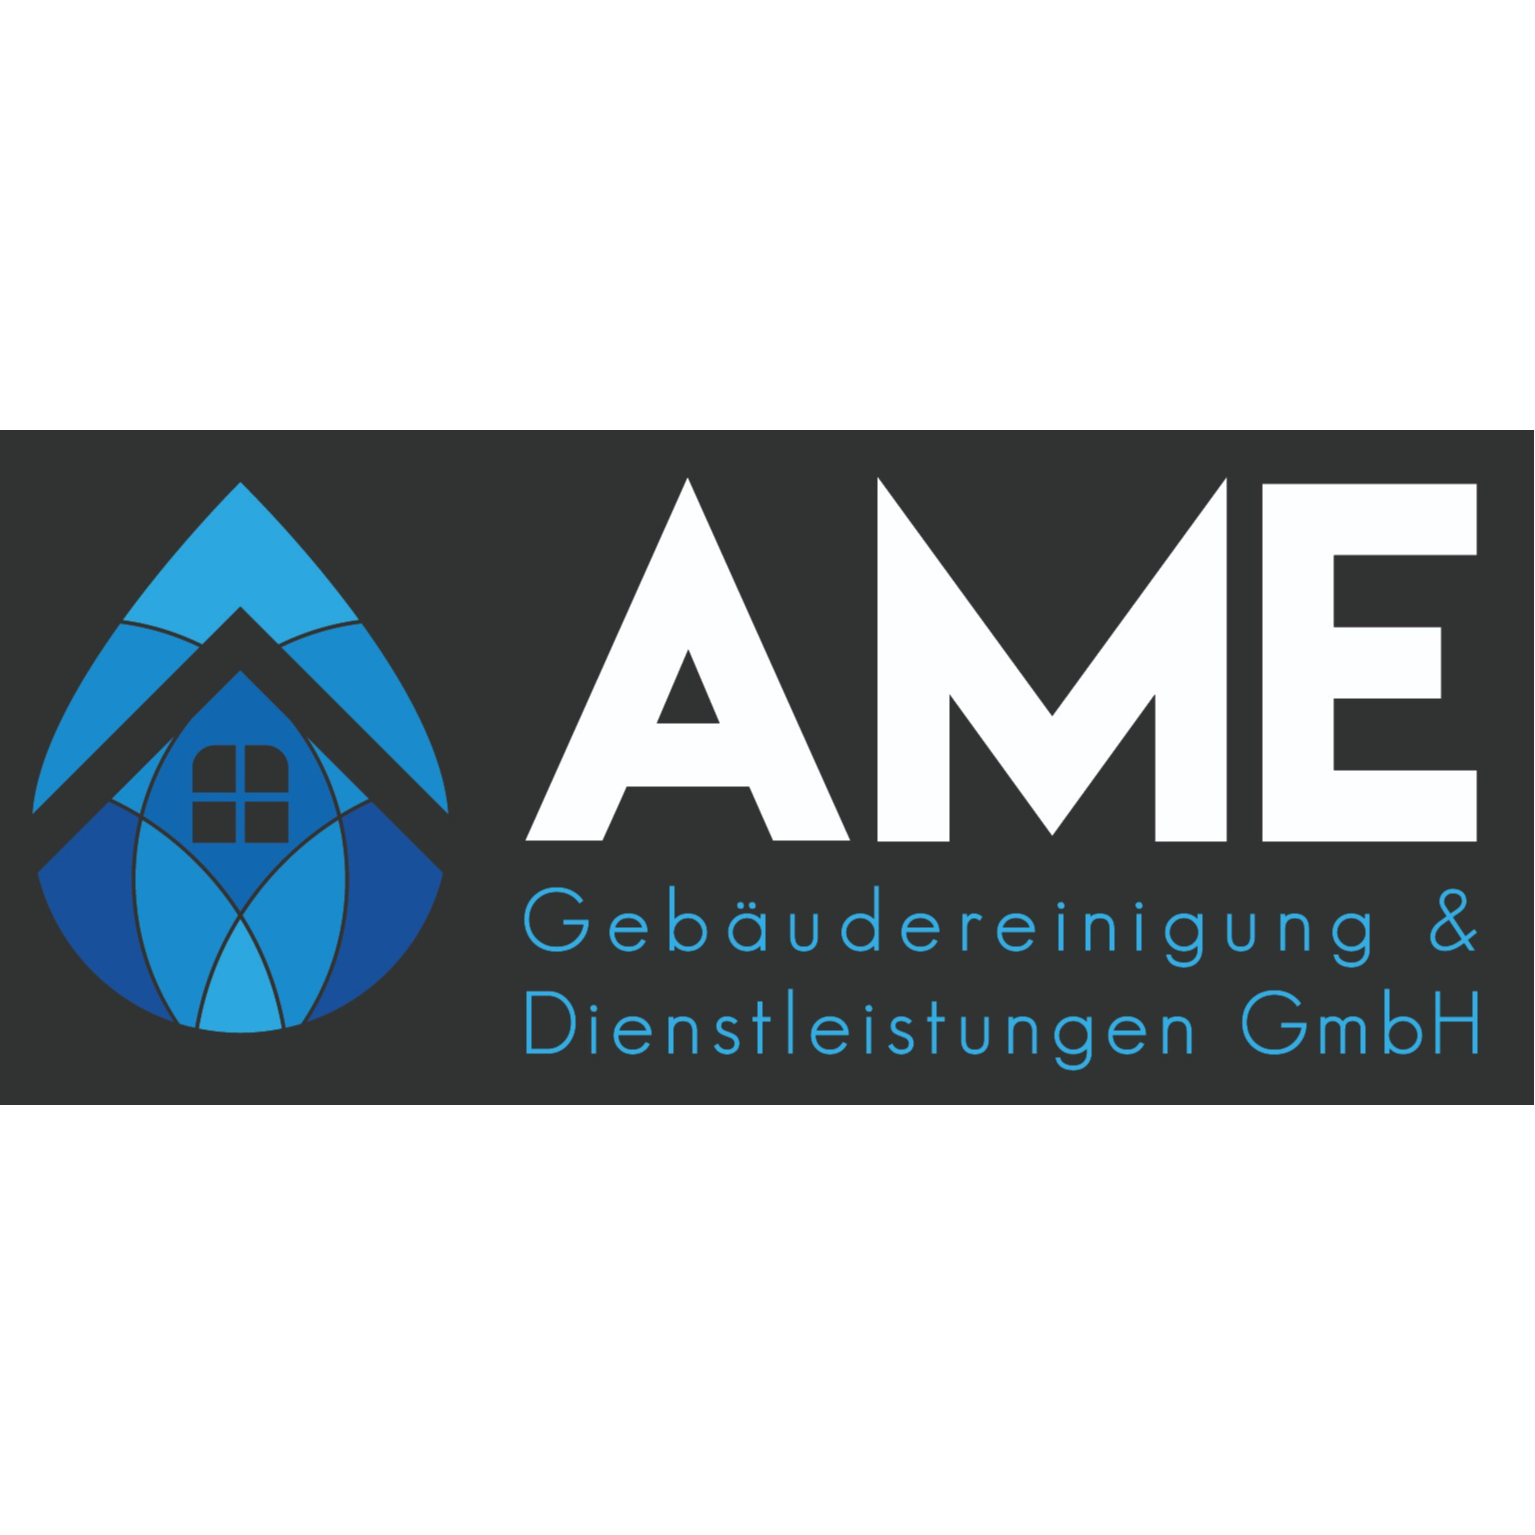 AME Gebäudereinigung & Dienstleistungen GmbH in Nufringen - Logo